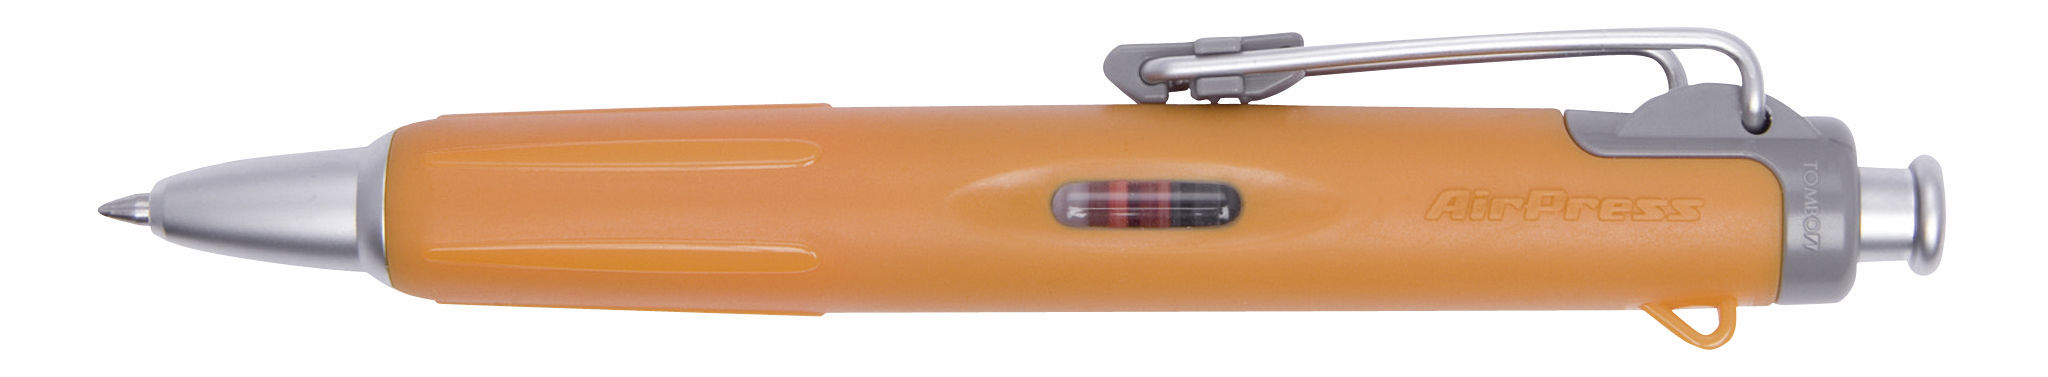 AirPress Pen Orange Barrel BK PK1